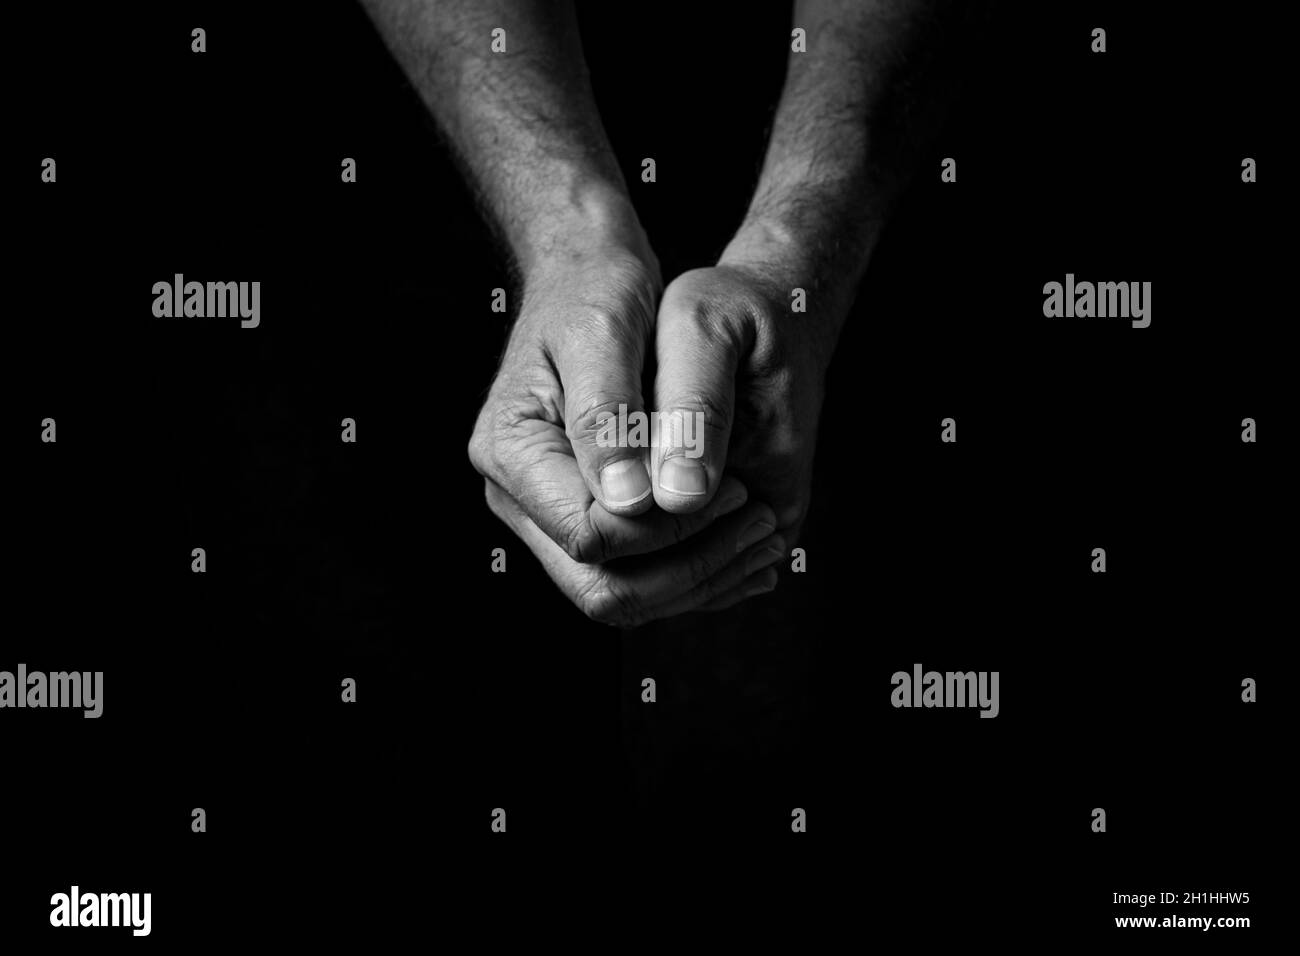 Schwarz-weißes Bild von zerknitterten männlichen Händen, die in Gedanken oder im Gebet zusammengehalten und vor einem schwarzen Hintergrund mit dramatischem Licht isoliert wurden Stockfoto